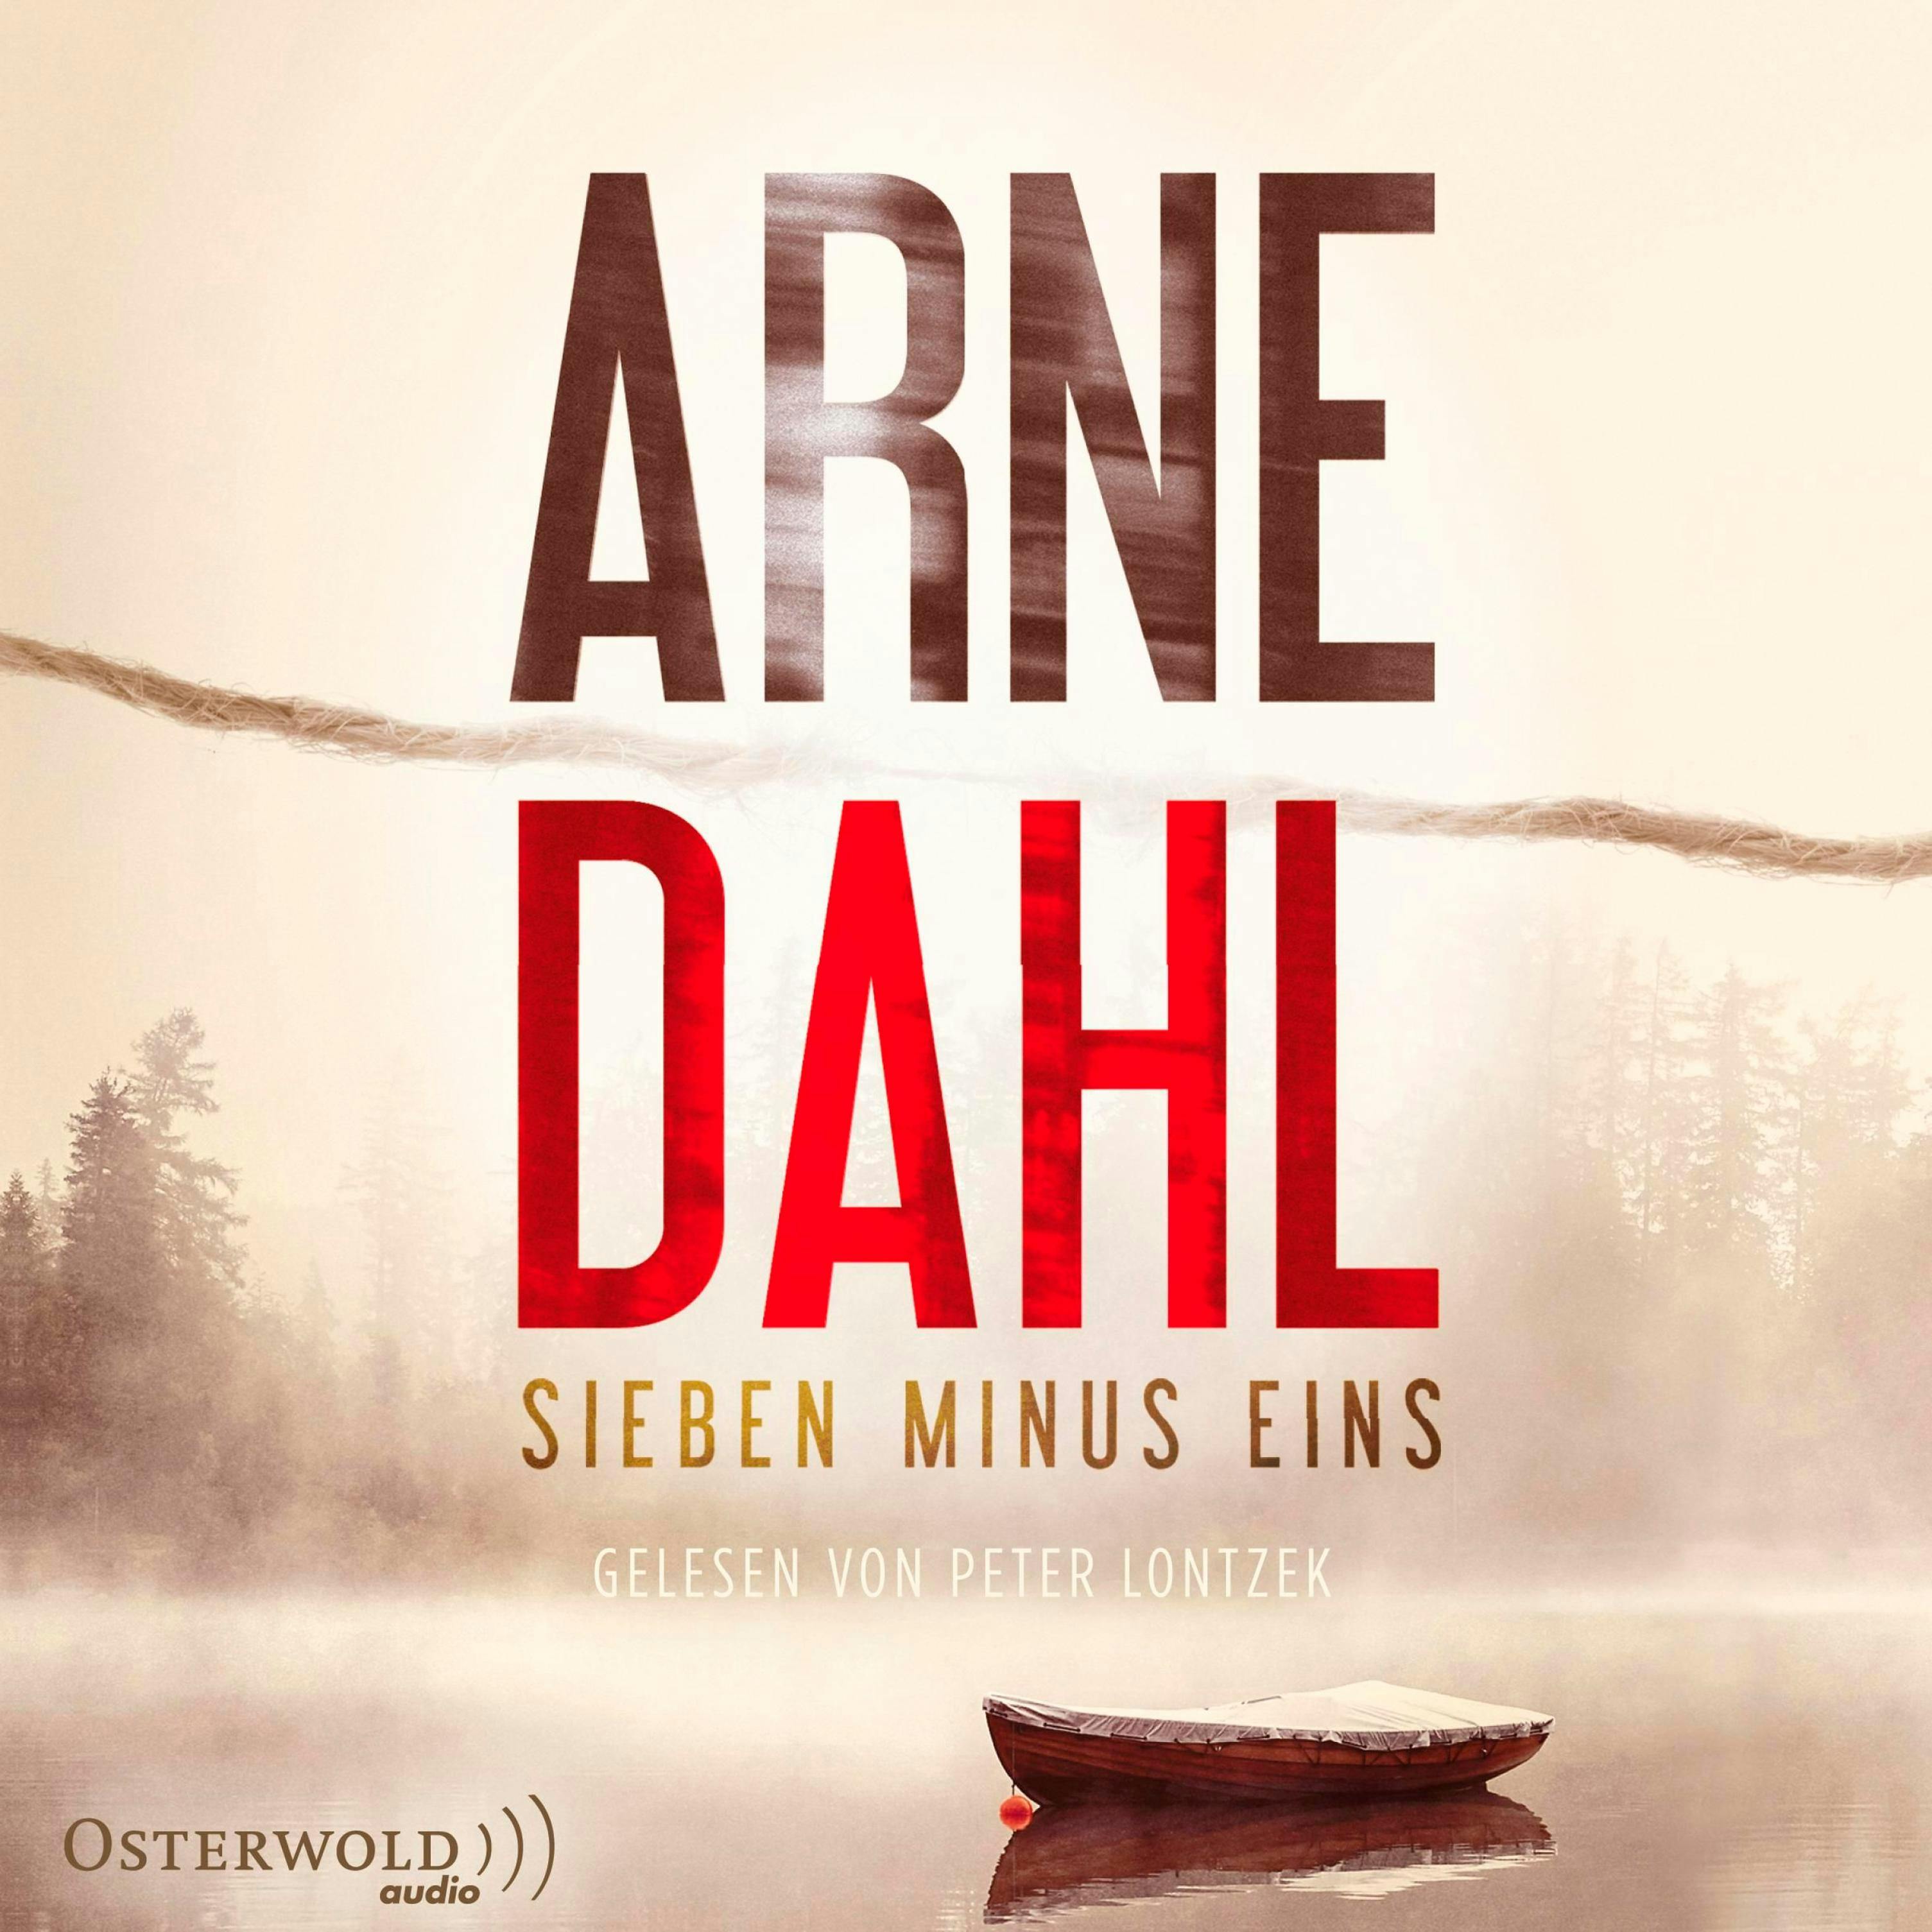 Sieben minus eins (Berger & Blom 1) - Arne Dahl